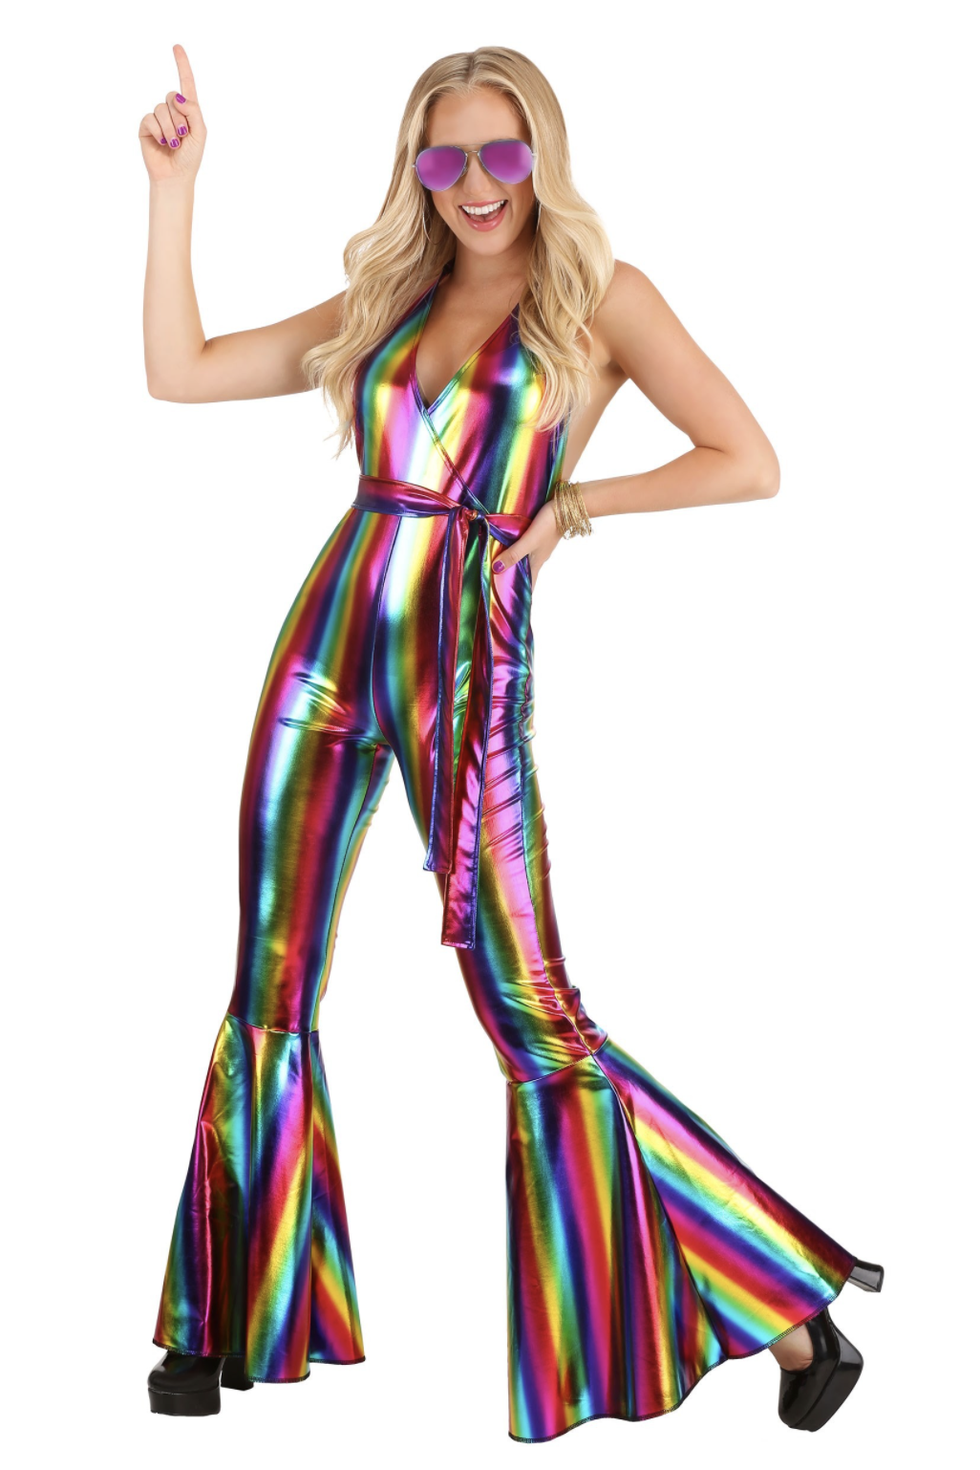 Retro Halloween Costume Ideas & Trends  Disco fashion, Disco outfit, 70s fashion  disco